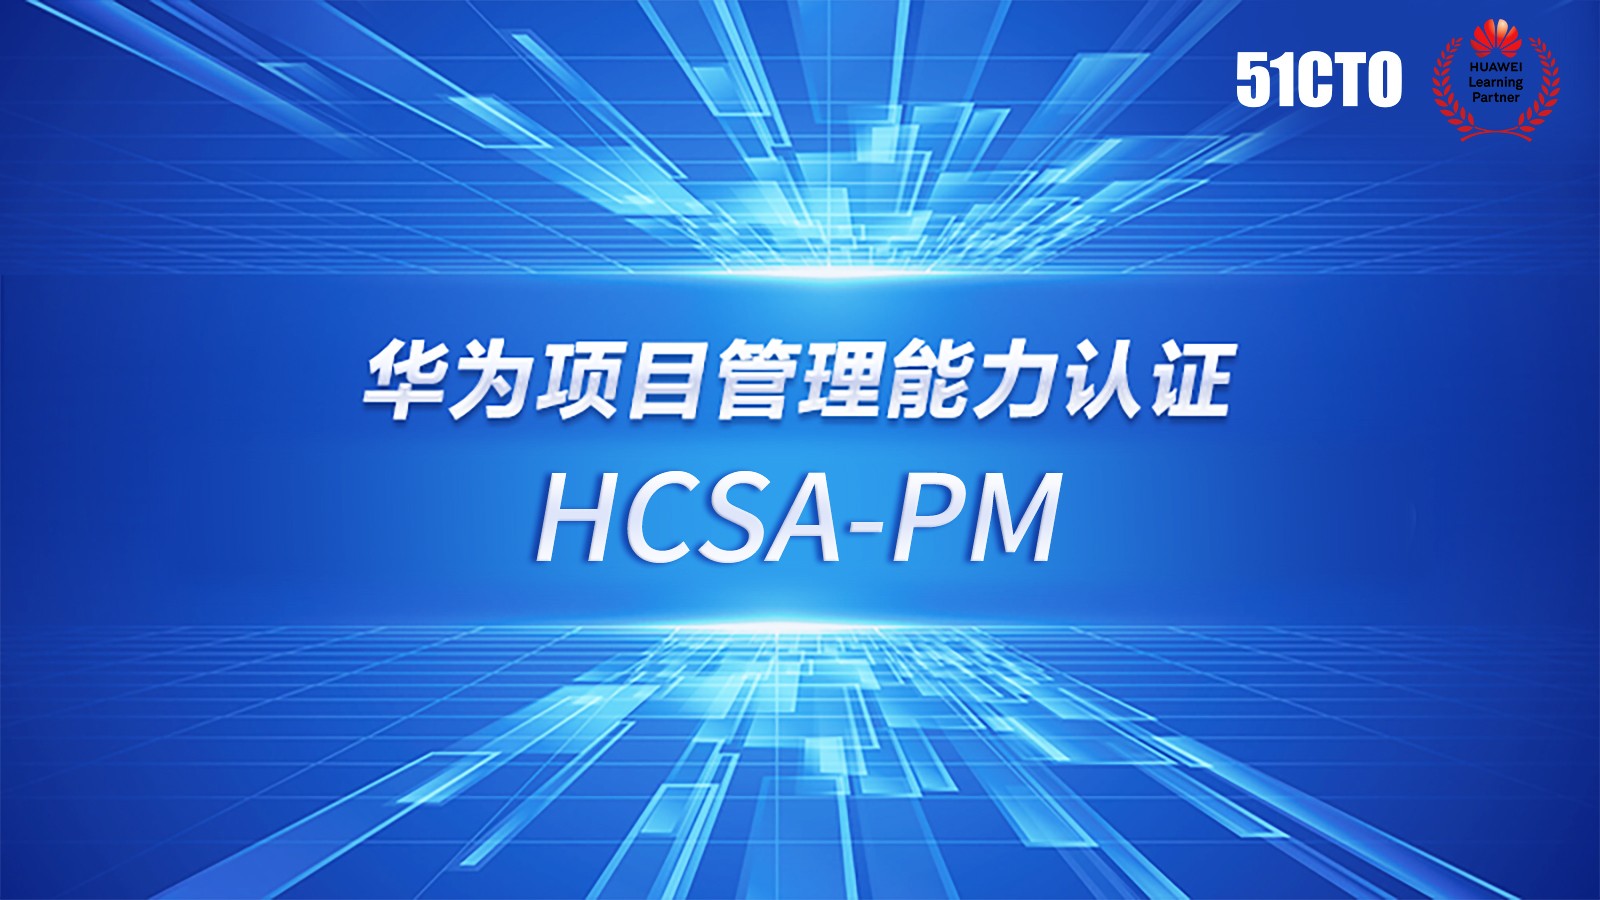 HCSA-PM华为项目管理能力认证介绍